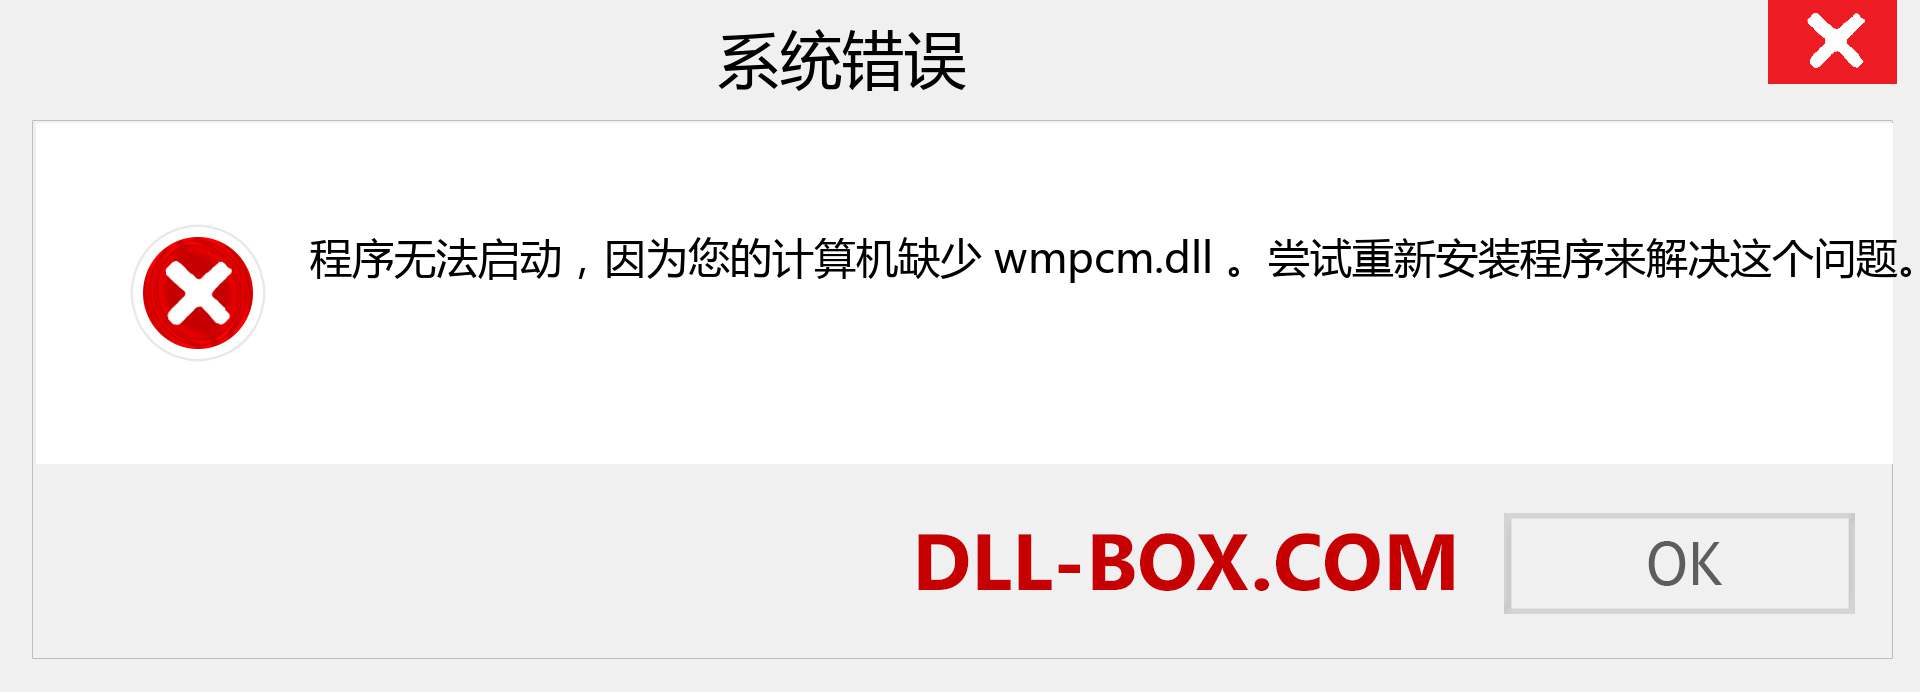 wmpcm.dll 文件丢失？。 适用于 Windows 7、8、10 的下载 - 修复 Windows、照片、图像上的 wmpcm dll 丢失错误